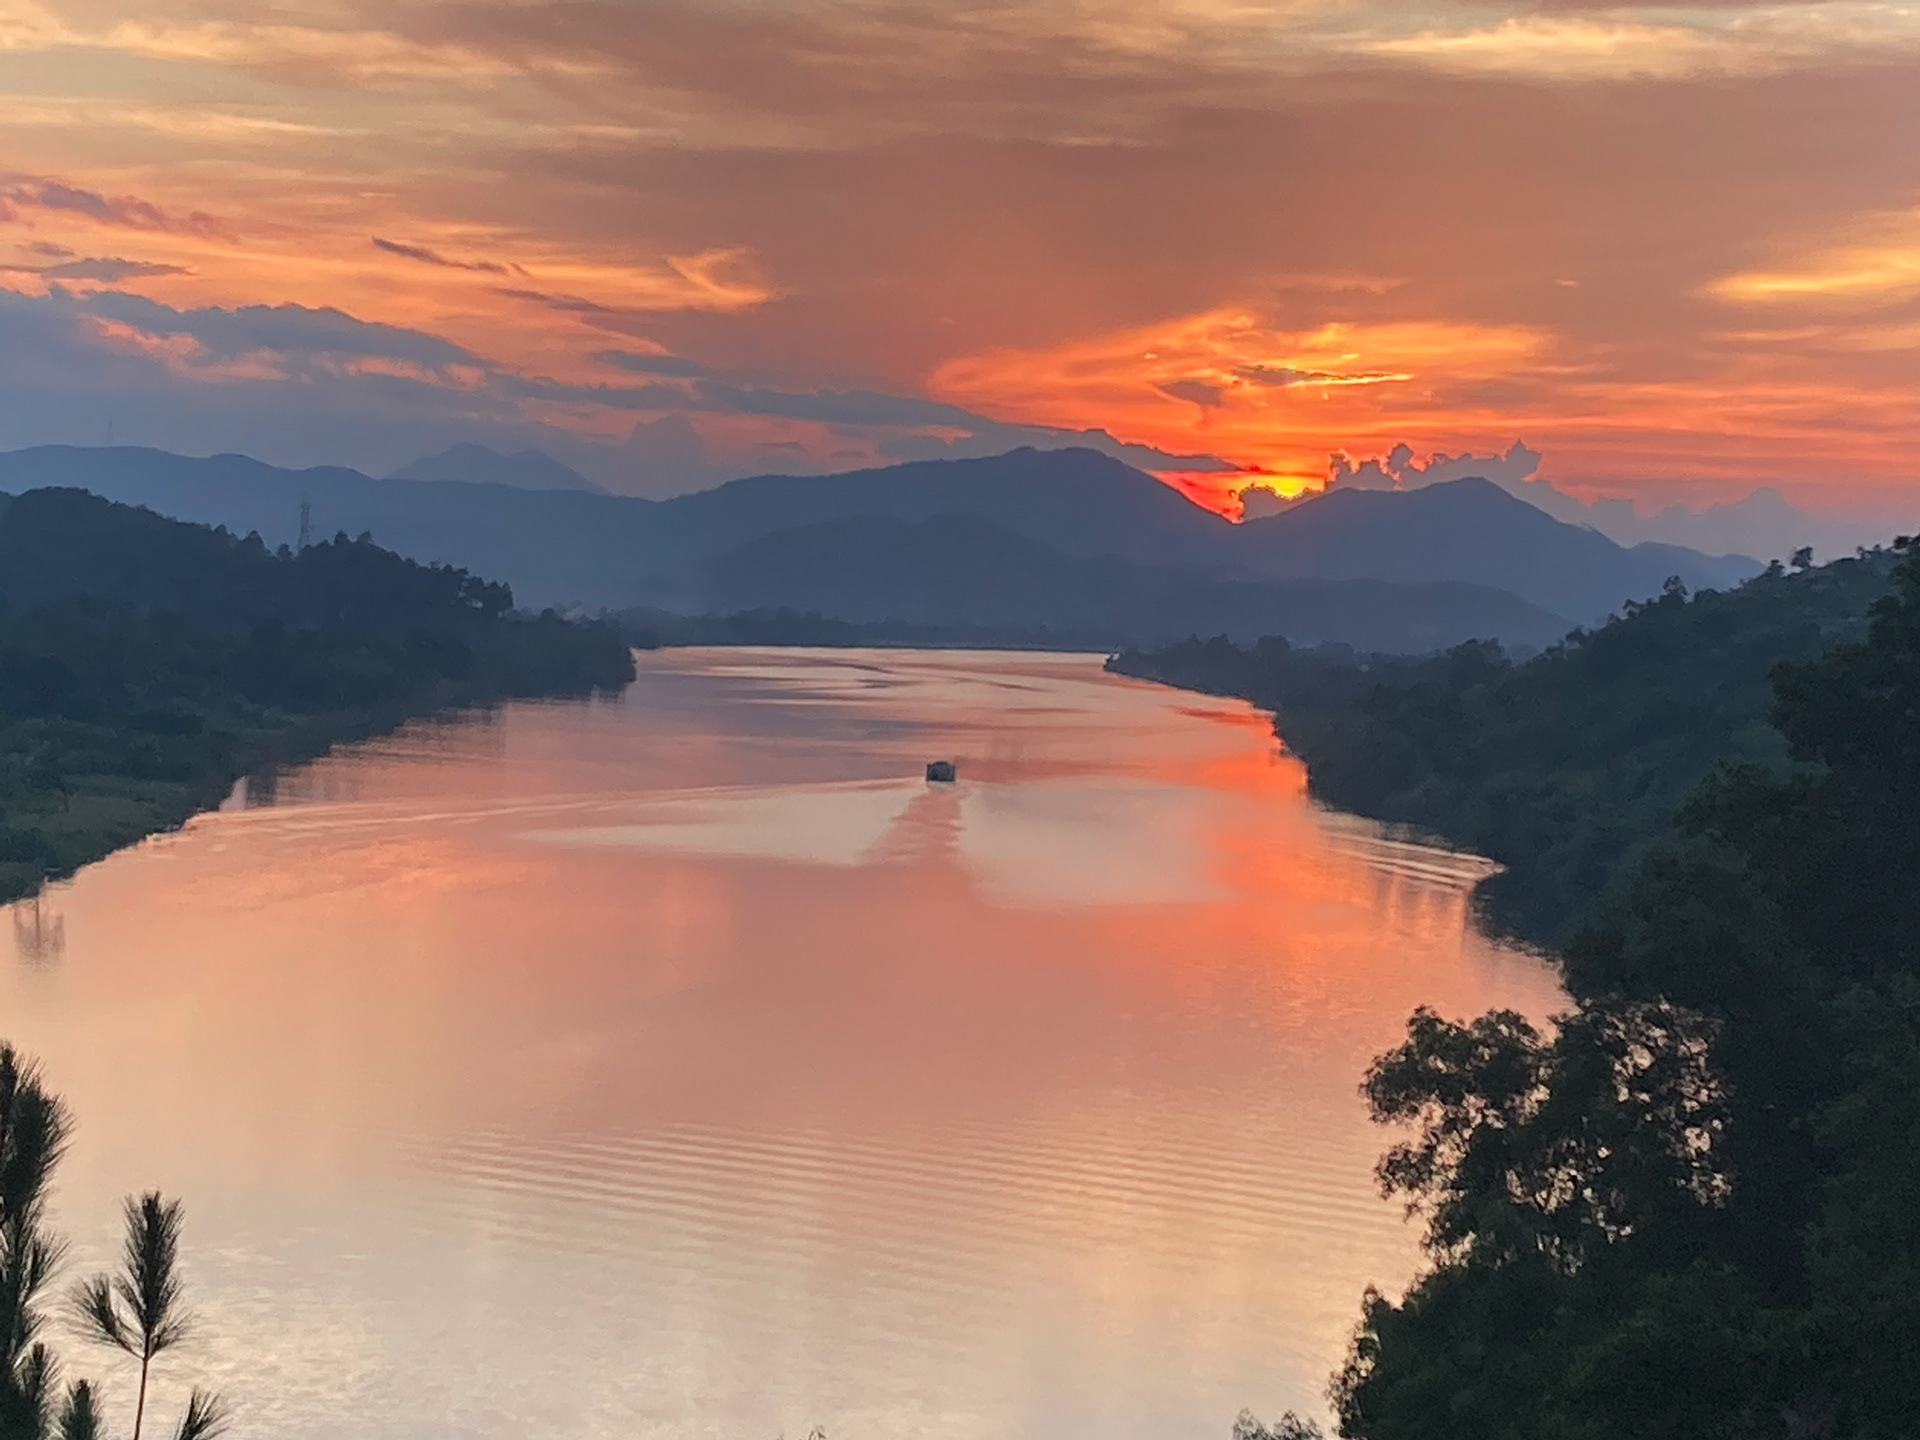 Sông Hương: Hương gió tràn đầy không khí trong lành cùng với khung cảnh đẹp tuyệt vời của Sông Hương sẽ khiến bạn cảm thấy thư thái và thanh thản. Cùng với những bức ảnh đẹp, bạn sẽ thấy được sự đẹp mơ màng, tĩnh lặng của miền Trung Việt Nam.